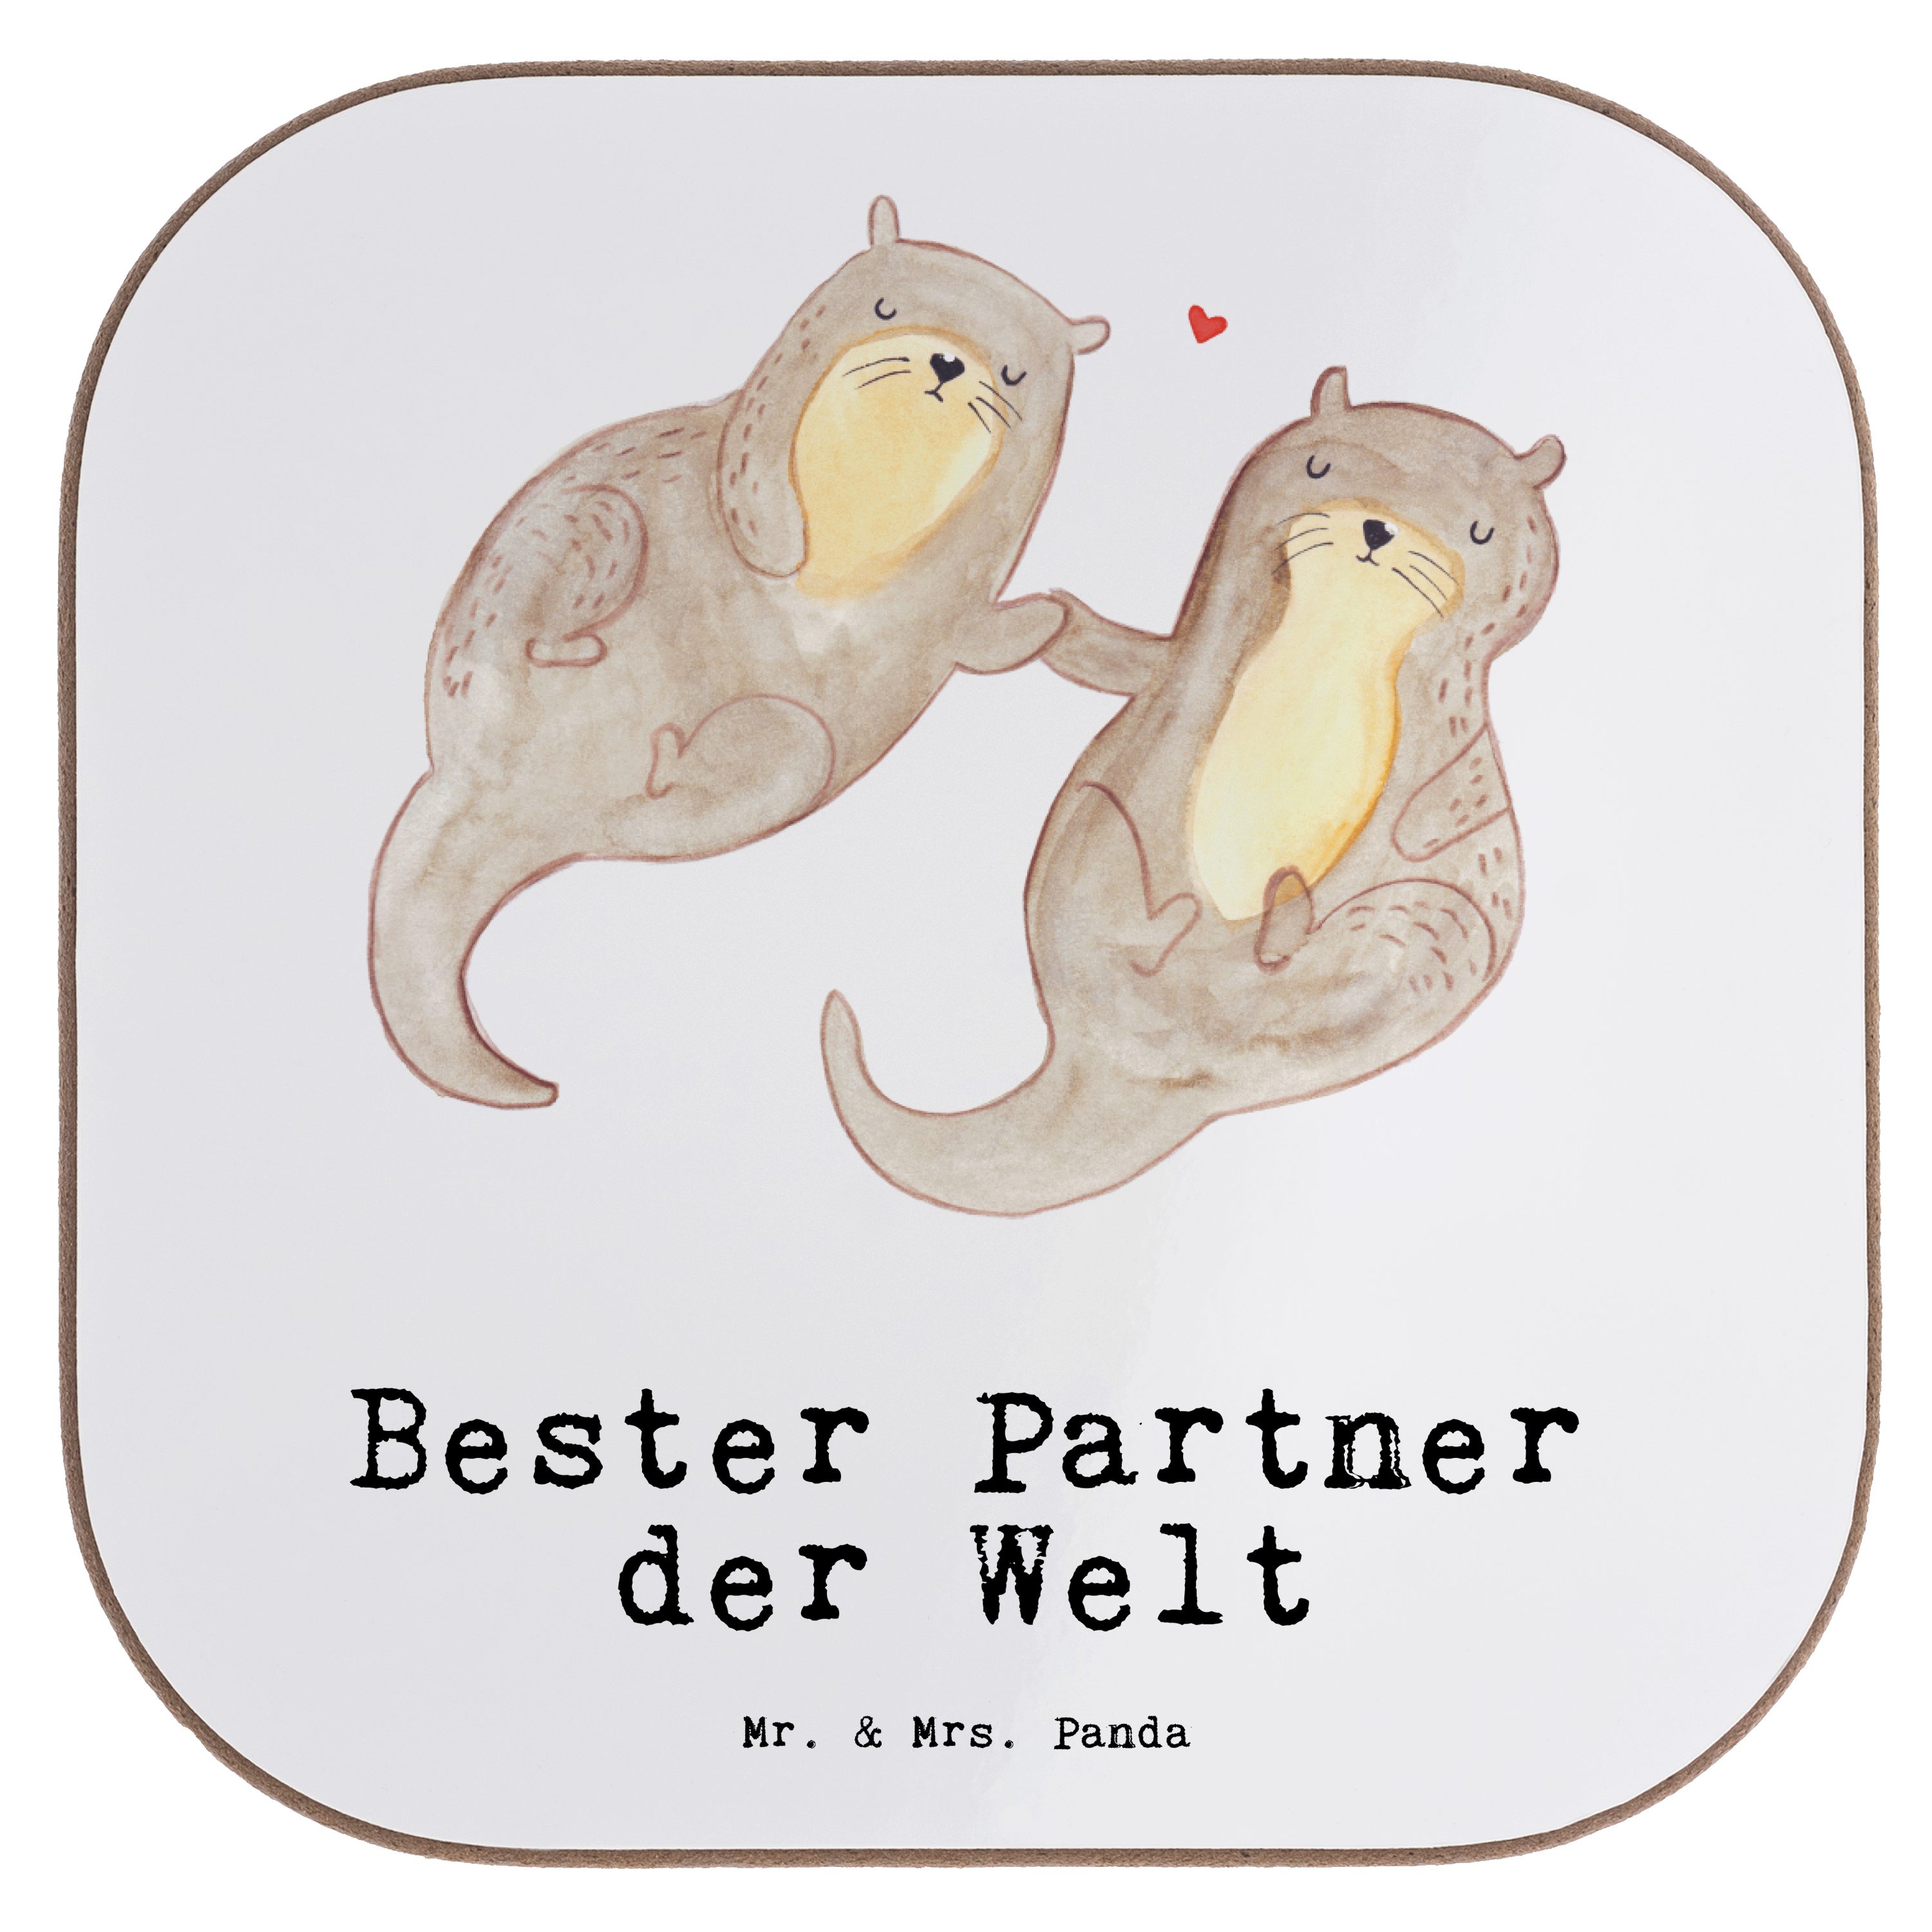 Mr. & Mrs. Panda Getränkeuntersetzer - Bierdeckel, 1-tlg. Welt der Bester Geburtst, Partner Weiß - Otter Geschenk